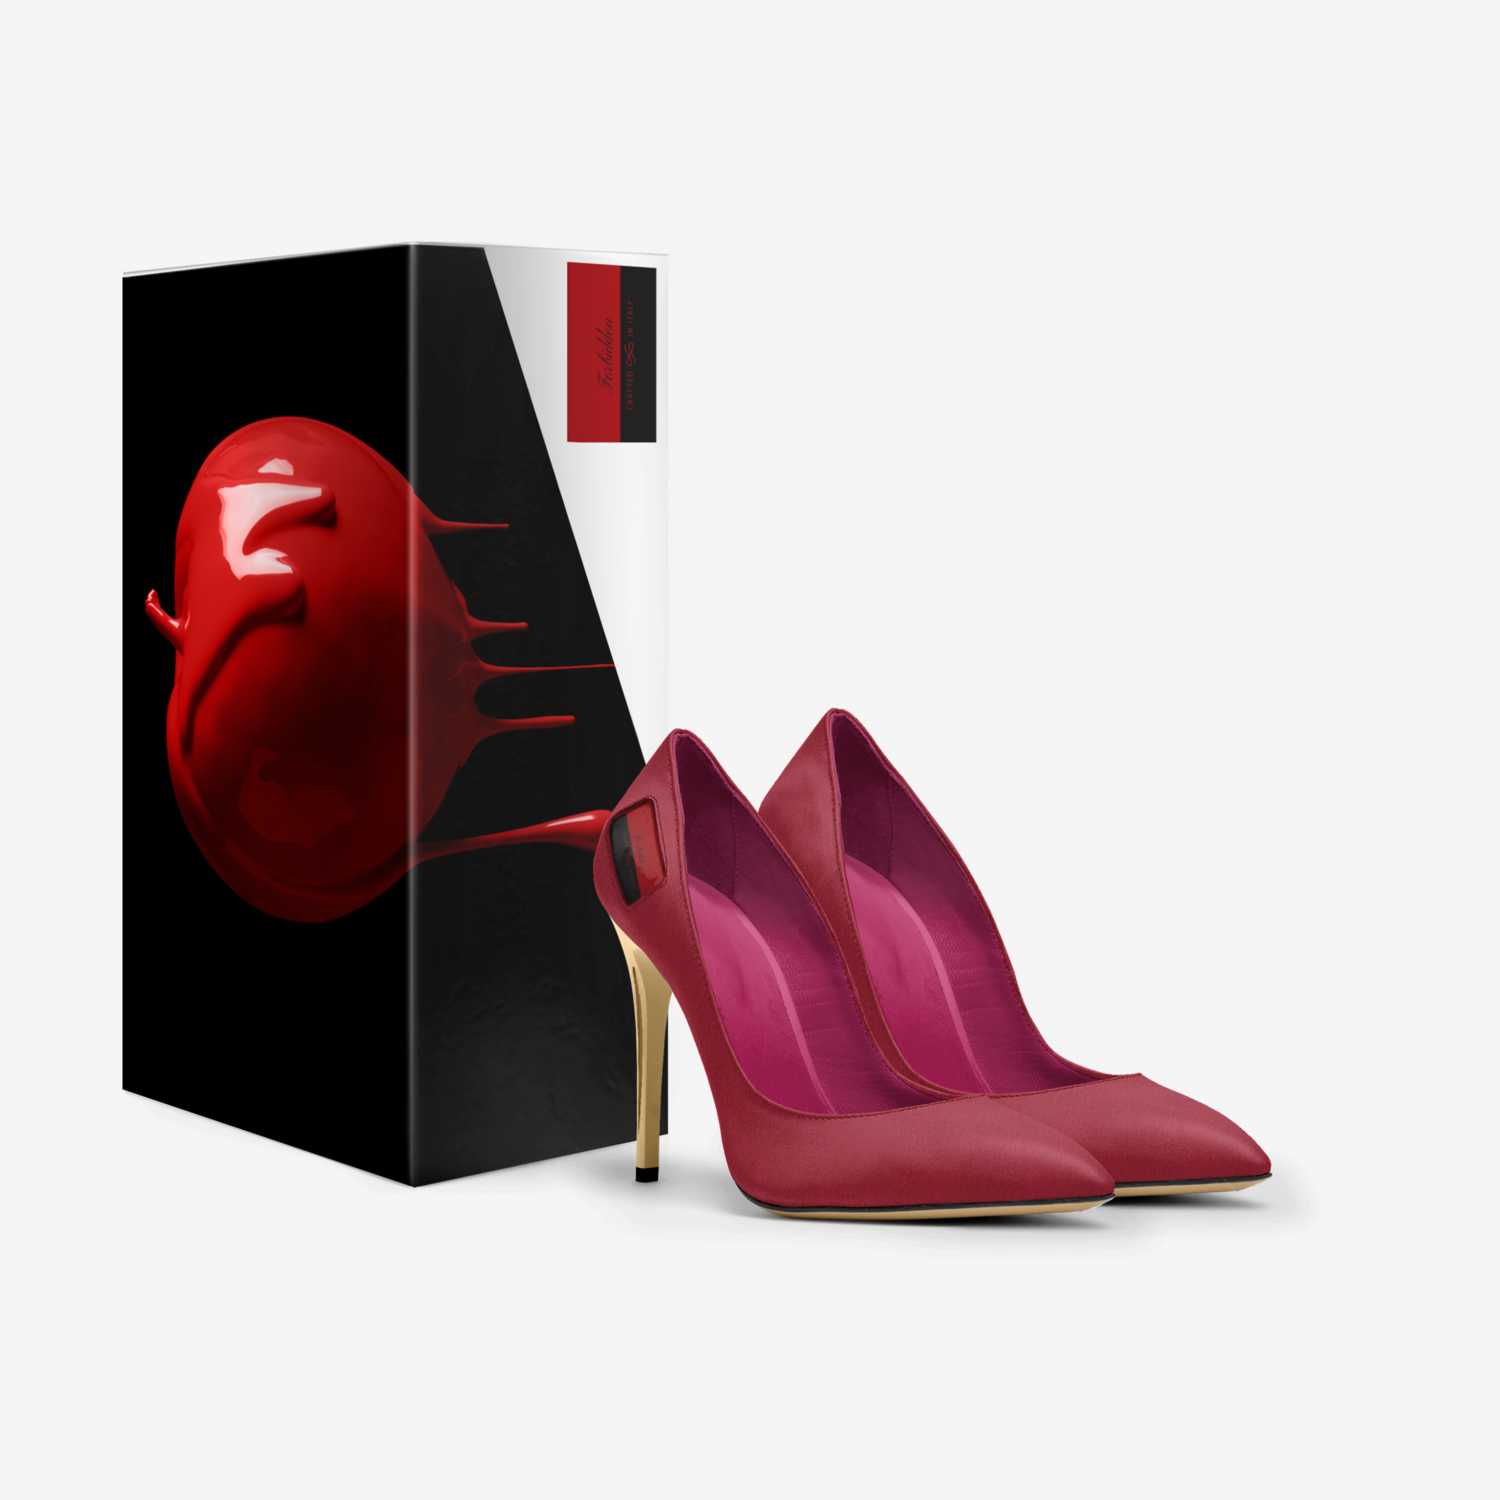 Forbidden custom made in Italy shoes by Tony V.harris | Box view